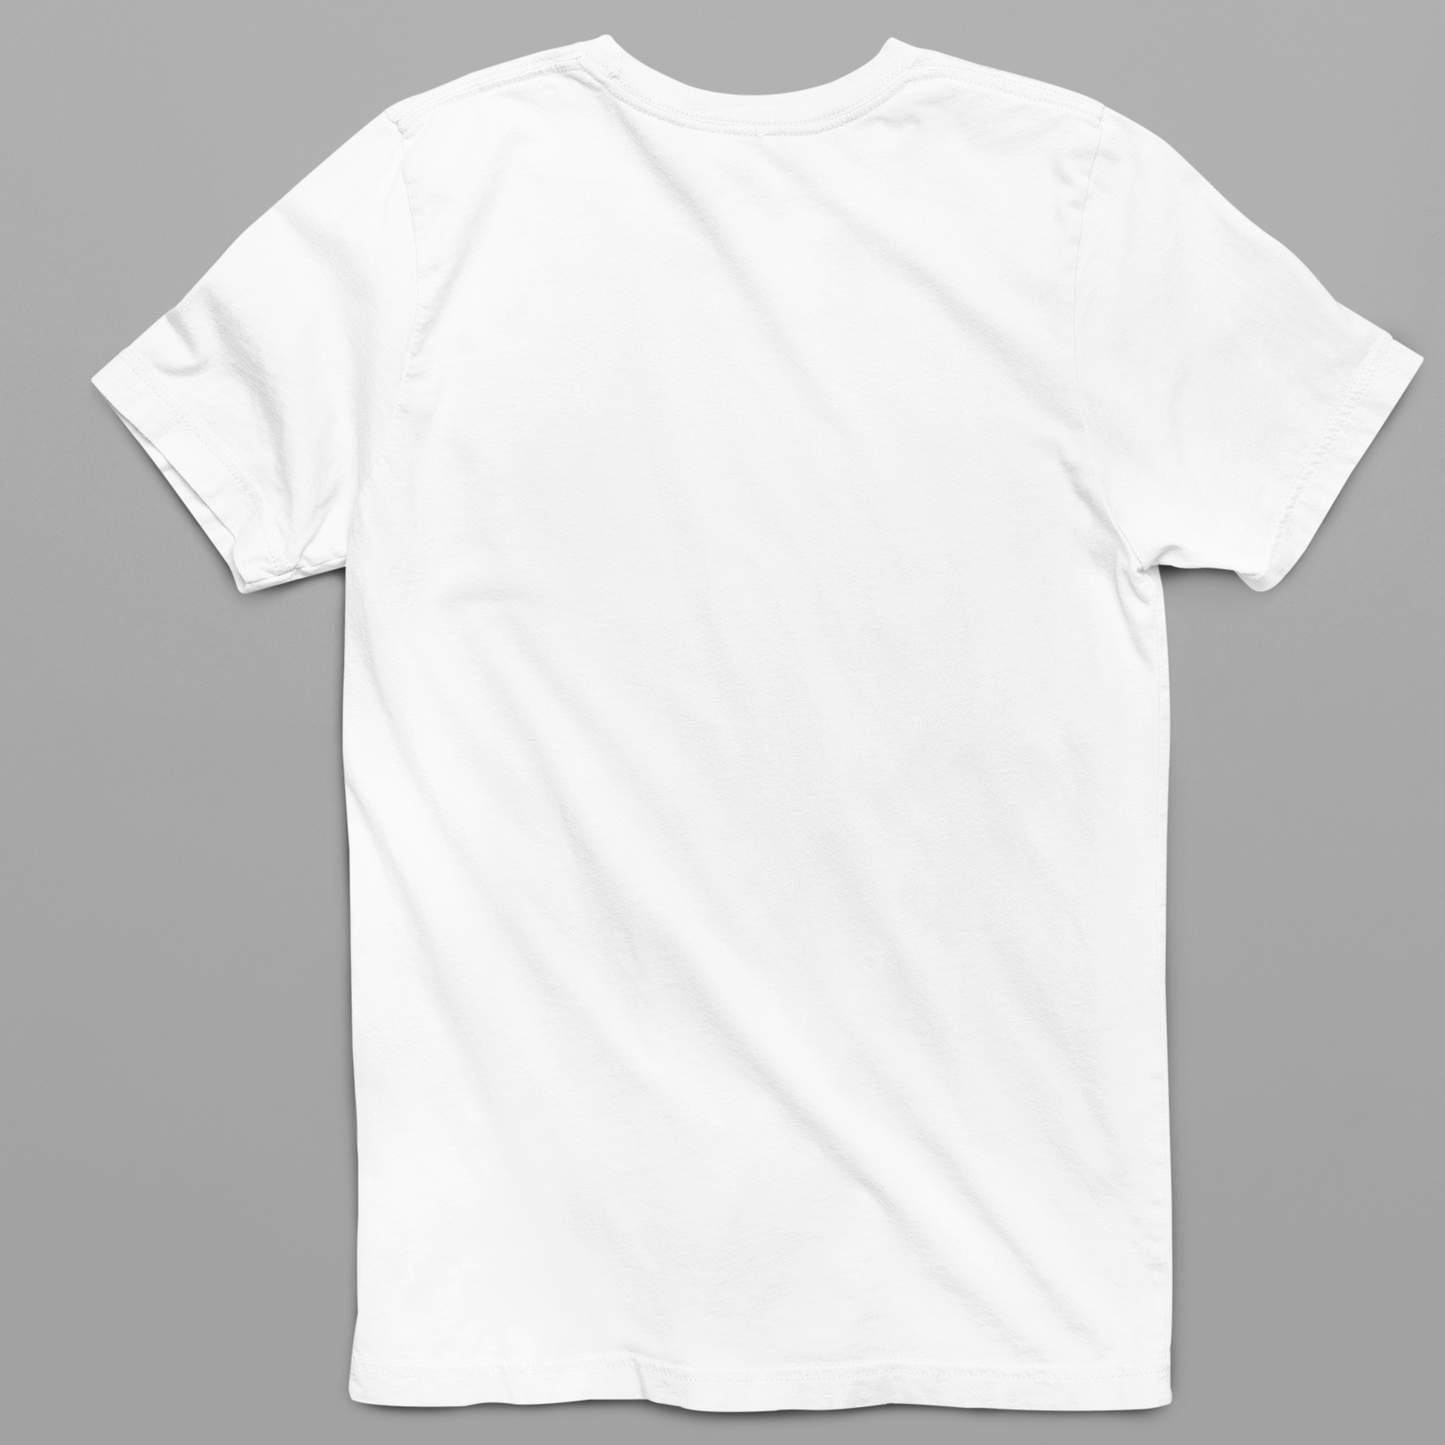 Tu Bahar Mil Printed T-Shirt - White